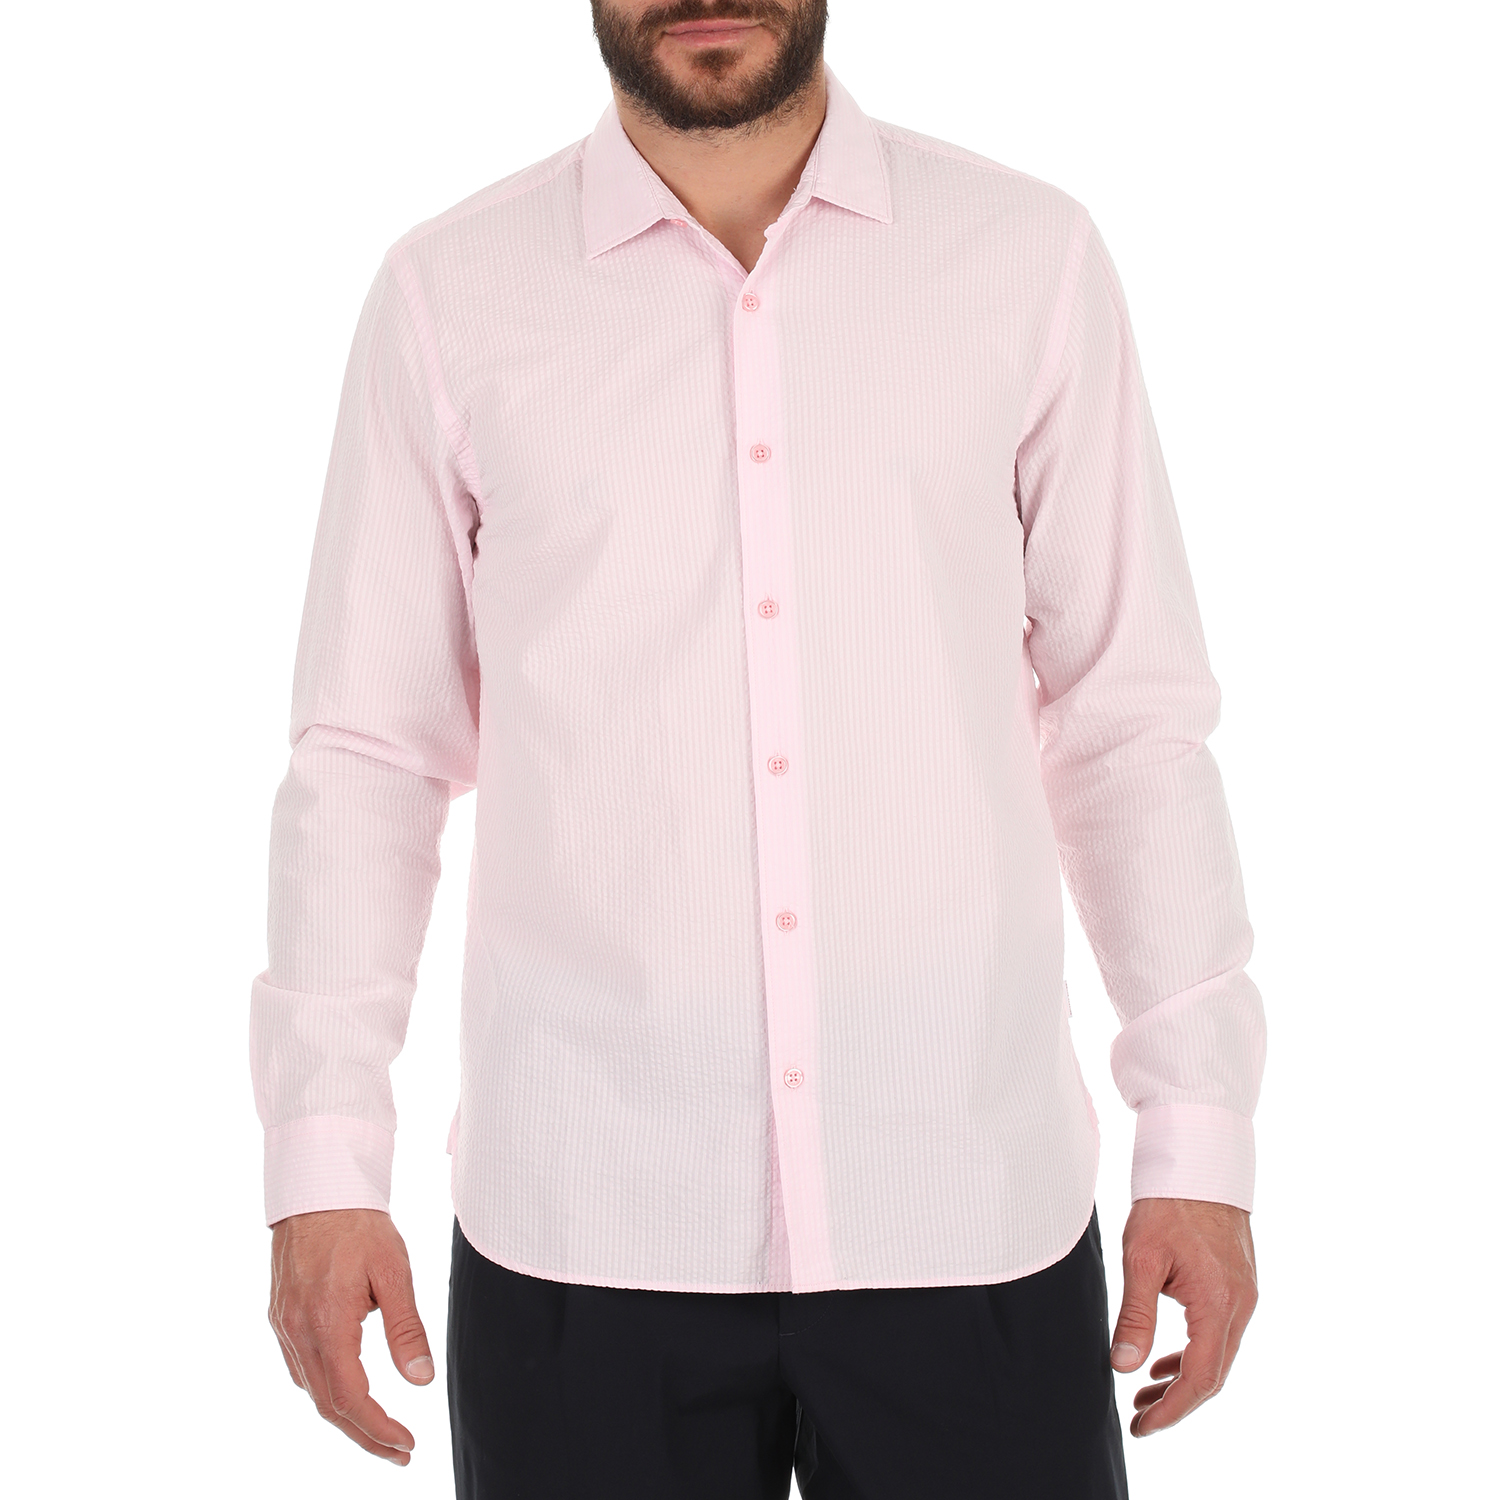 Ανδρικά/Ρούχα/Πουκάμισα/Μακρυμάνικα ORLEBAR BROWN - Ανδρικό πουκάμισο ORLEBAR BROWN Giles Seersucker C ροζ